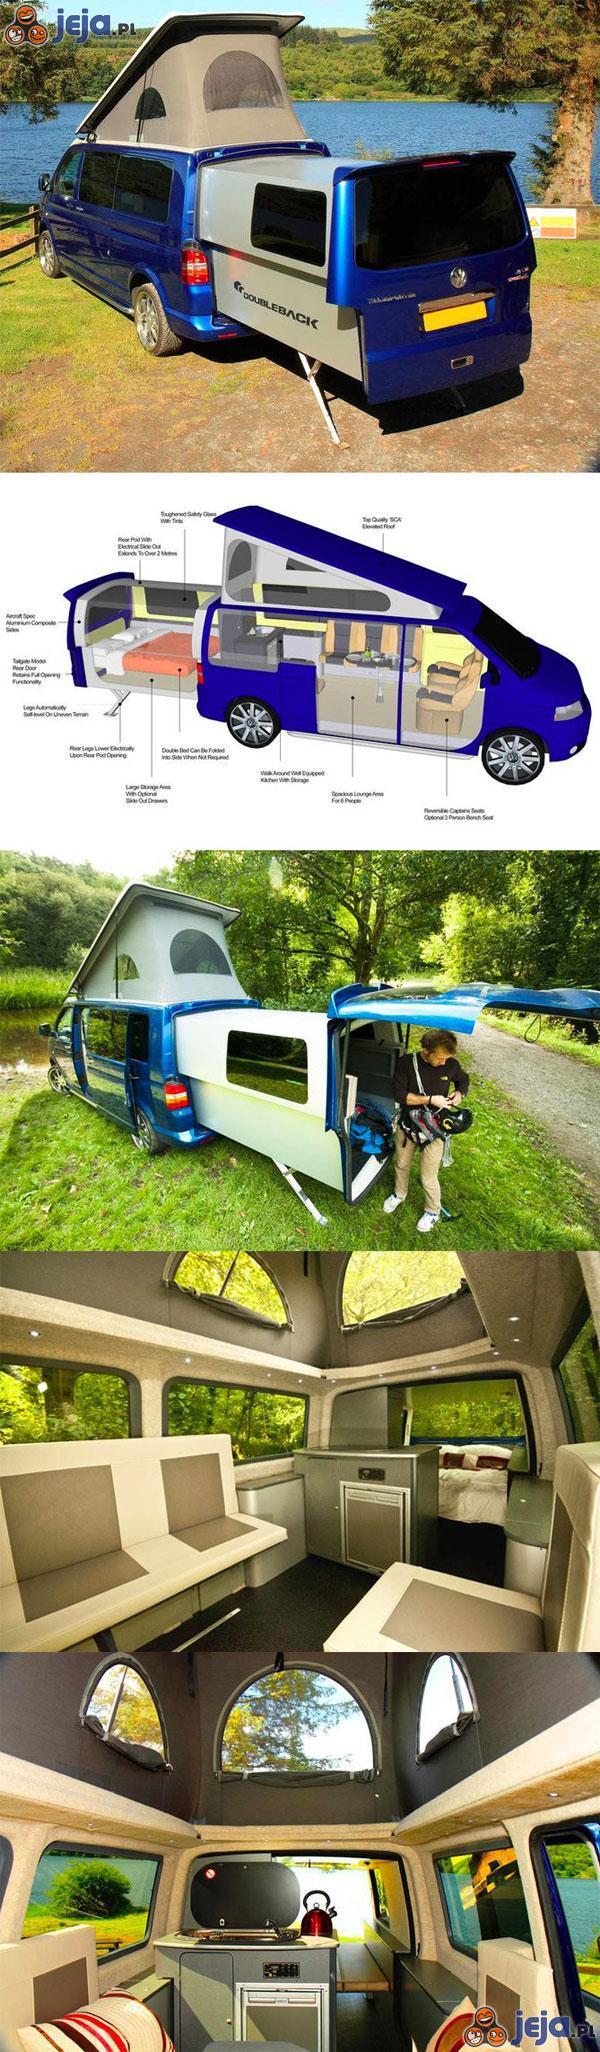 Samochód campingowy